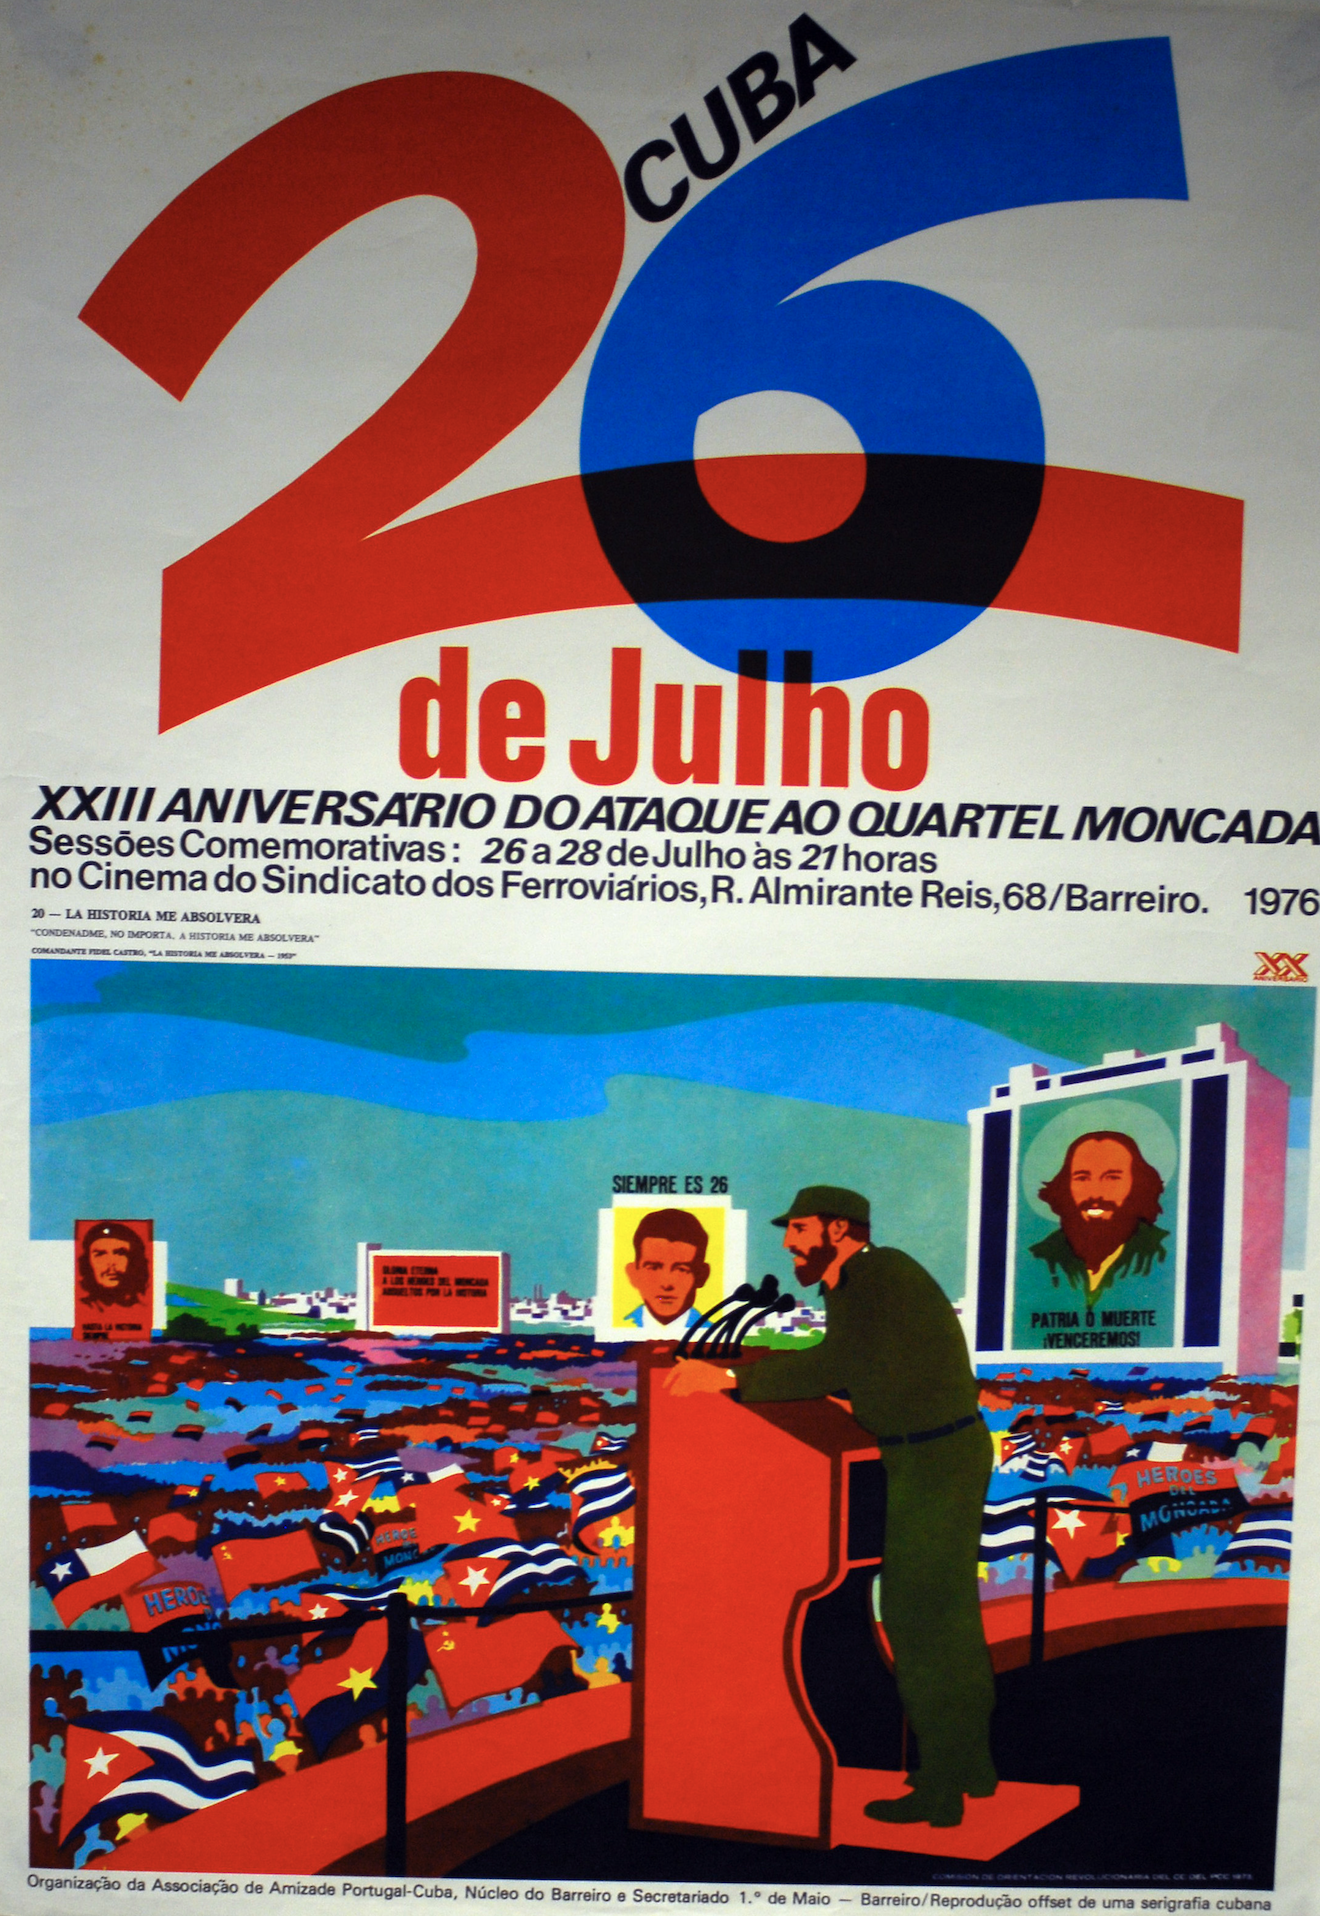 26 de Julho Cuba - XIII Aniversário doataque ao quartel Moncada